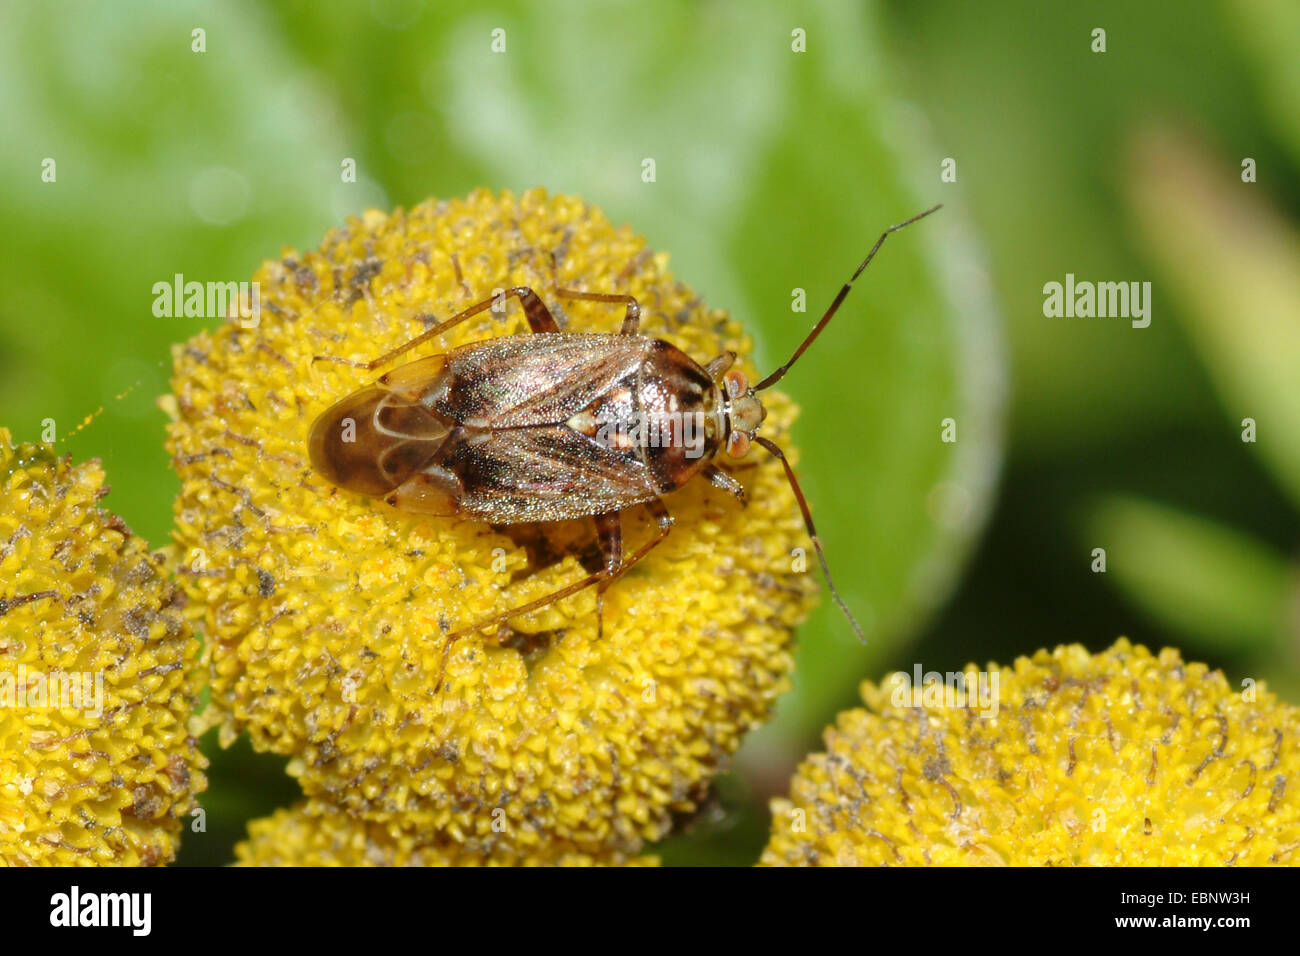 Tarnished Plant Bug (Lygus rugulipennis), on yellow flower, Germany Stock Photo